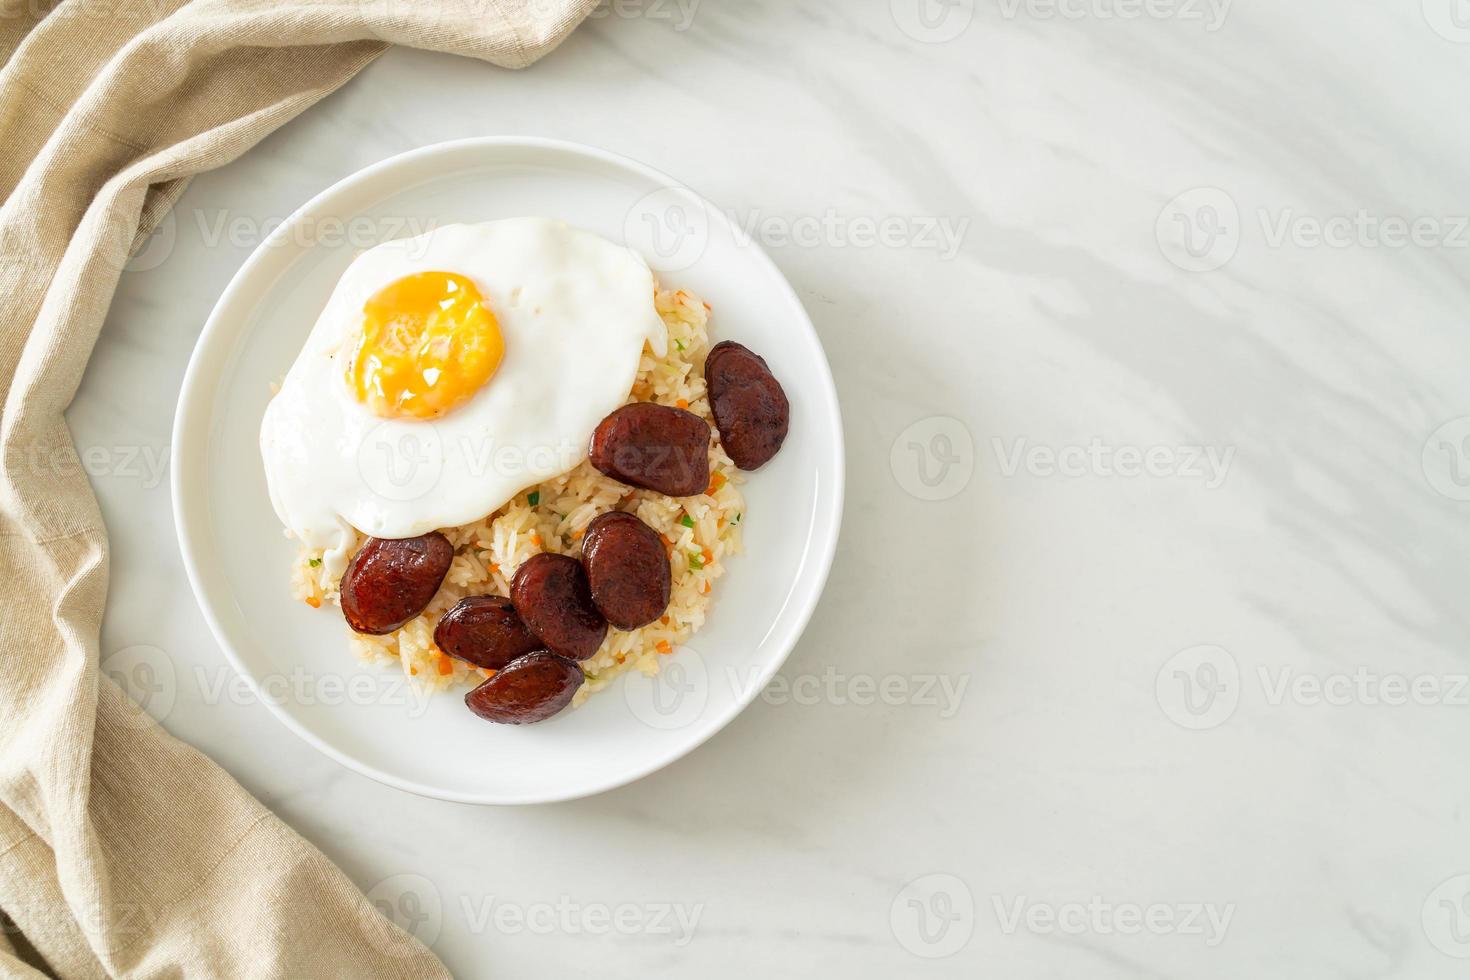 stekt ris med stekt ägg och kinesisk korv - hemlagad mat i asiatisk stil foto